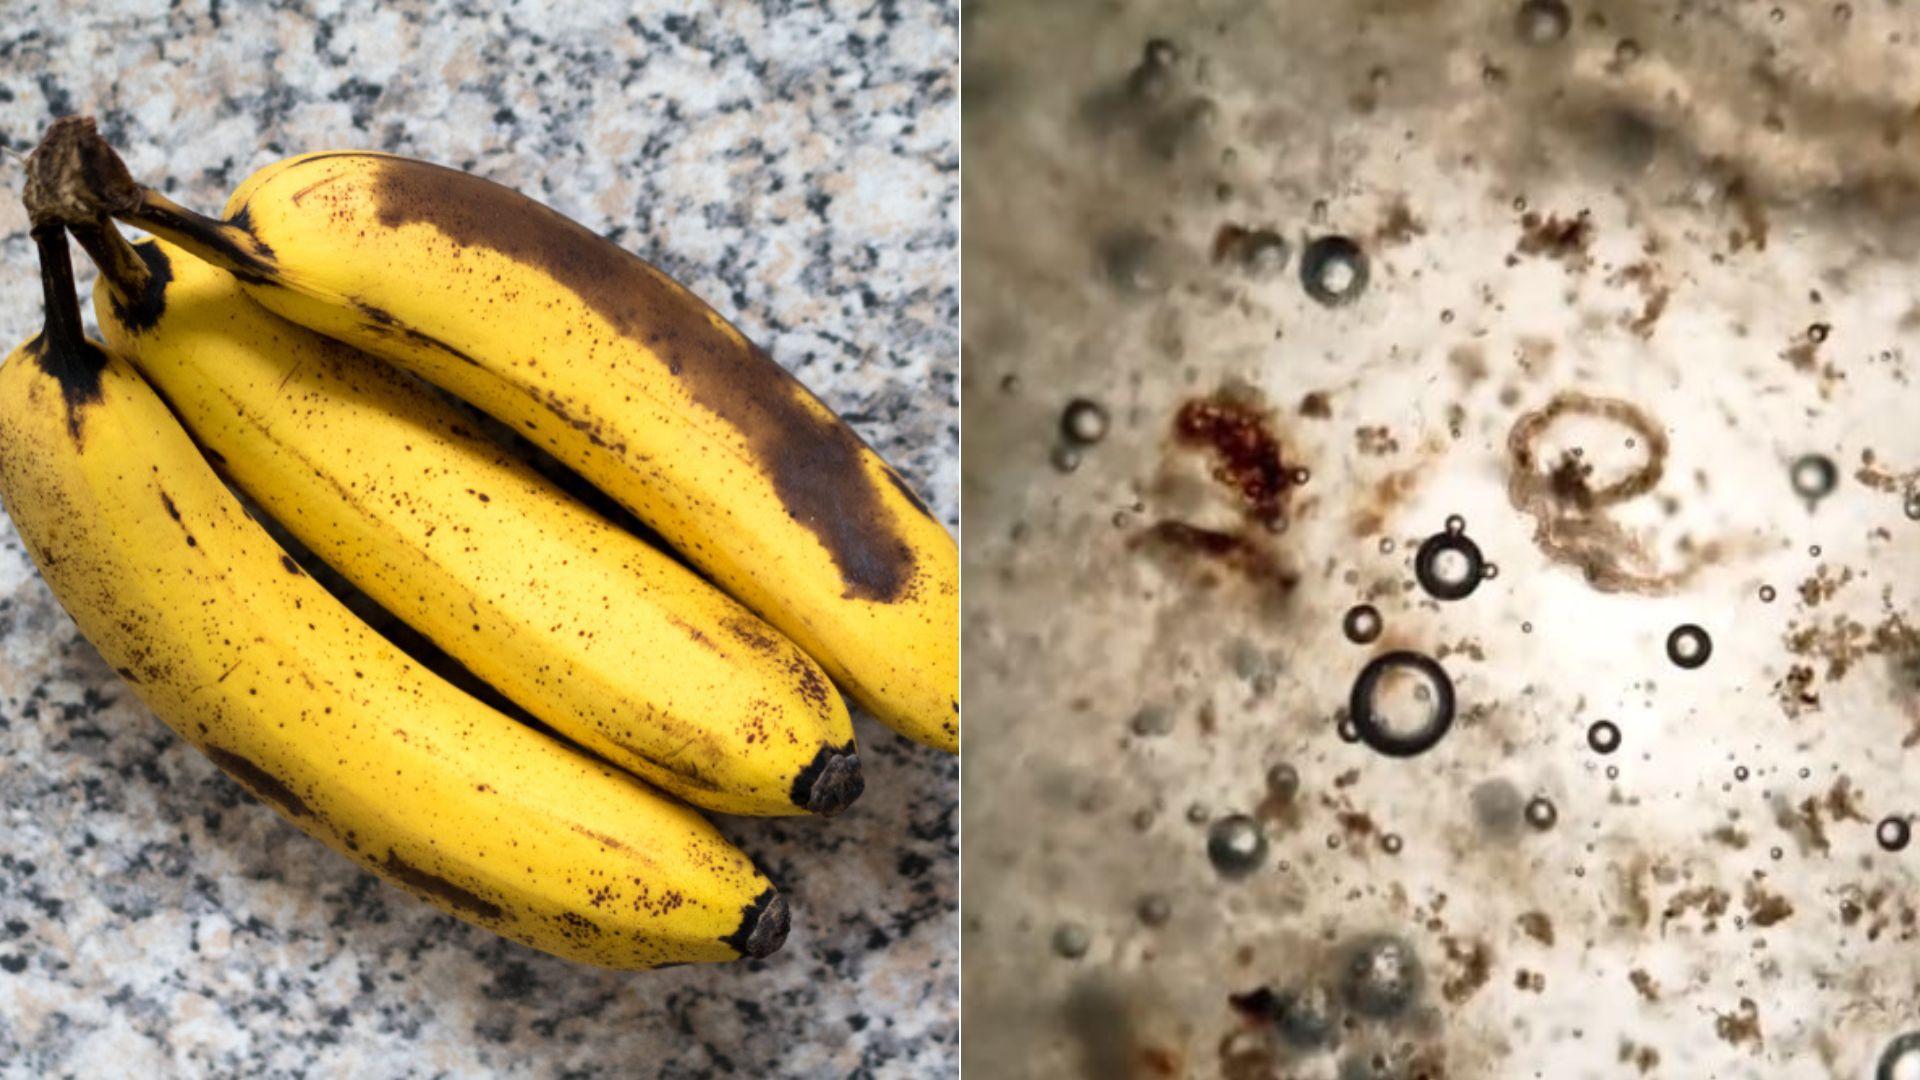 colaj de imagini cu o banana coapta intr-o parte si o captura cu ce contine vazuta la microscop